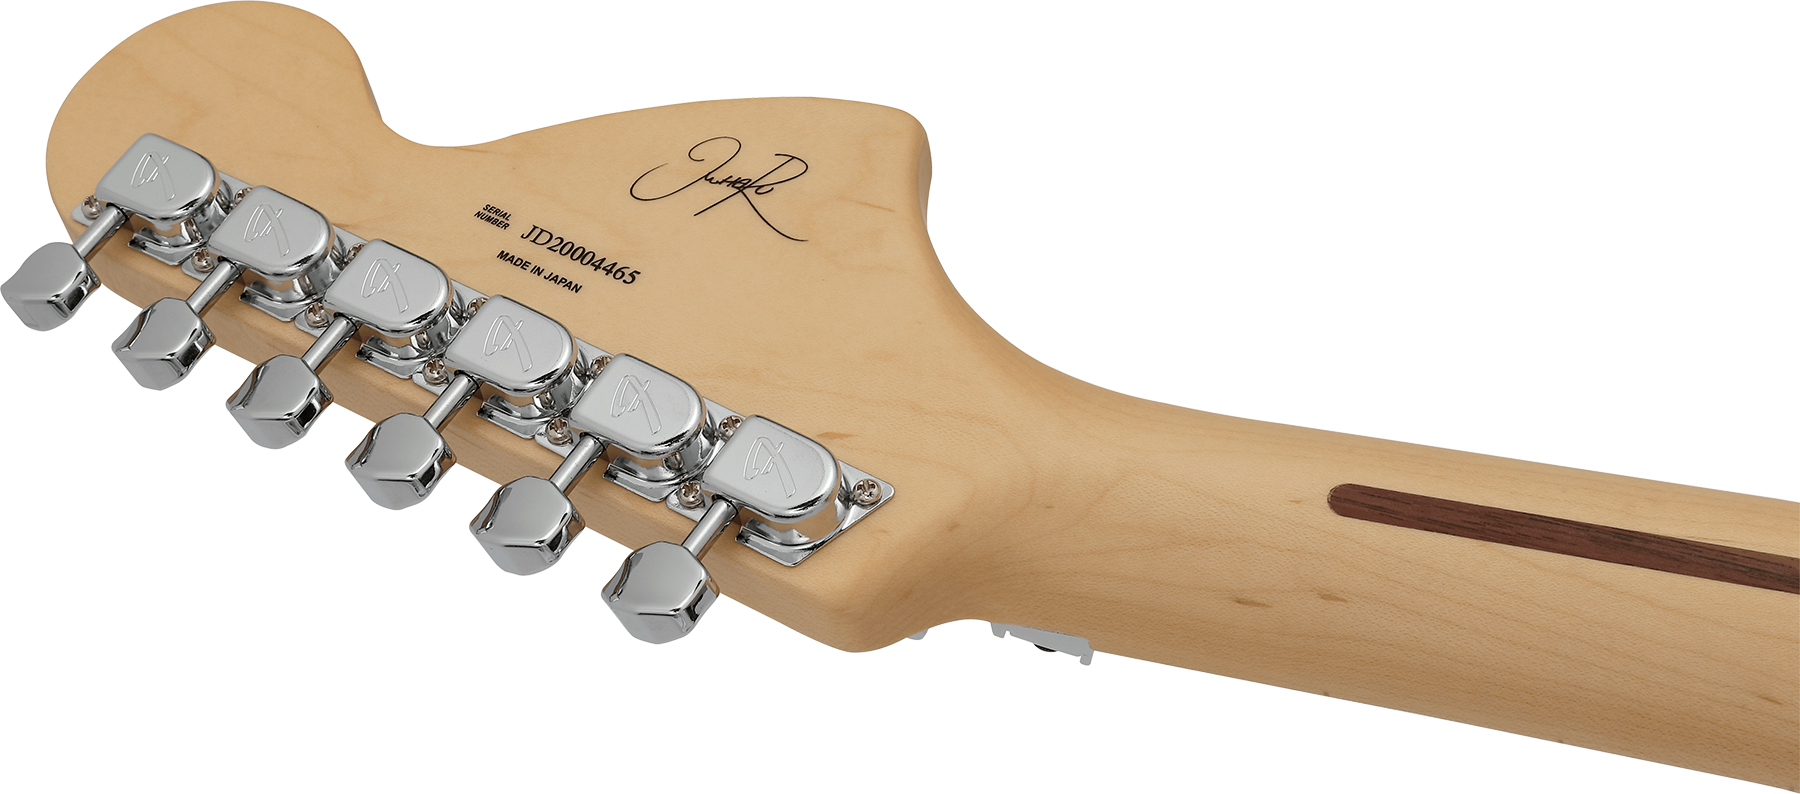 Fender Michiya Haruhata Strat Jap Signature Hsh Trem Mn - Trans Pink - Str shape electric guitar - Variation 3